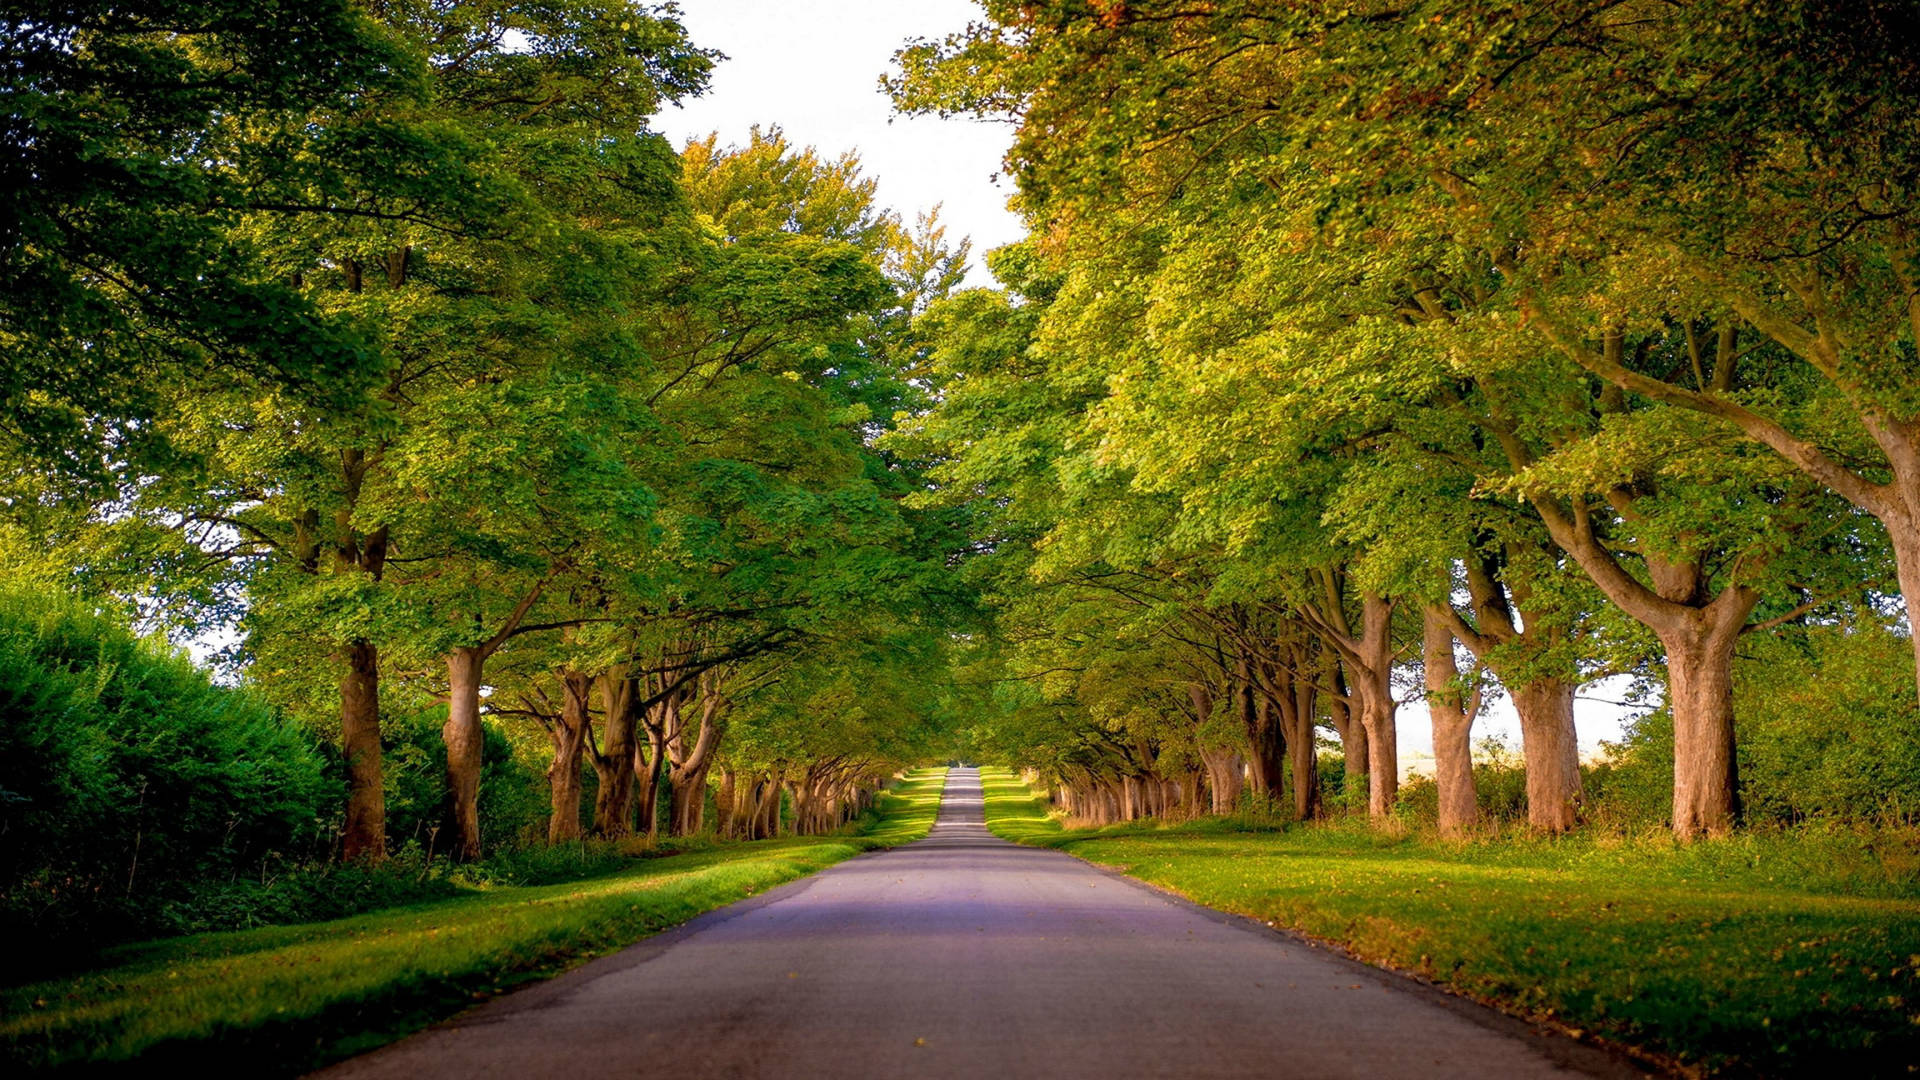 Green Driveway Trees In Kings Avenue, Norfolk England Wallpaper